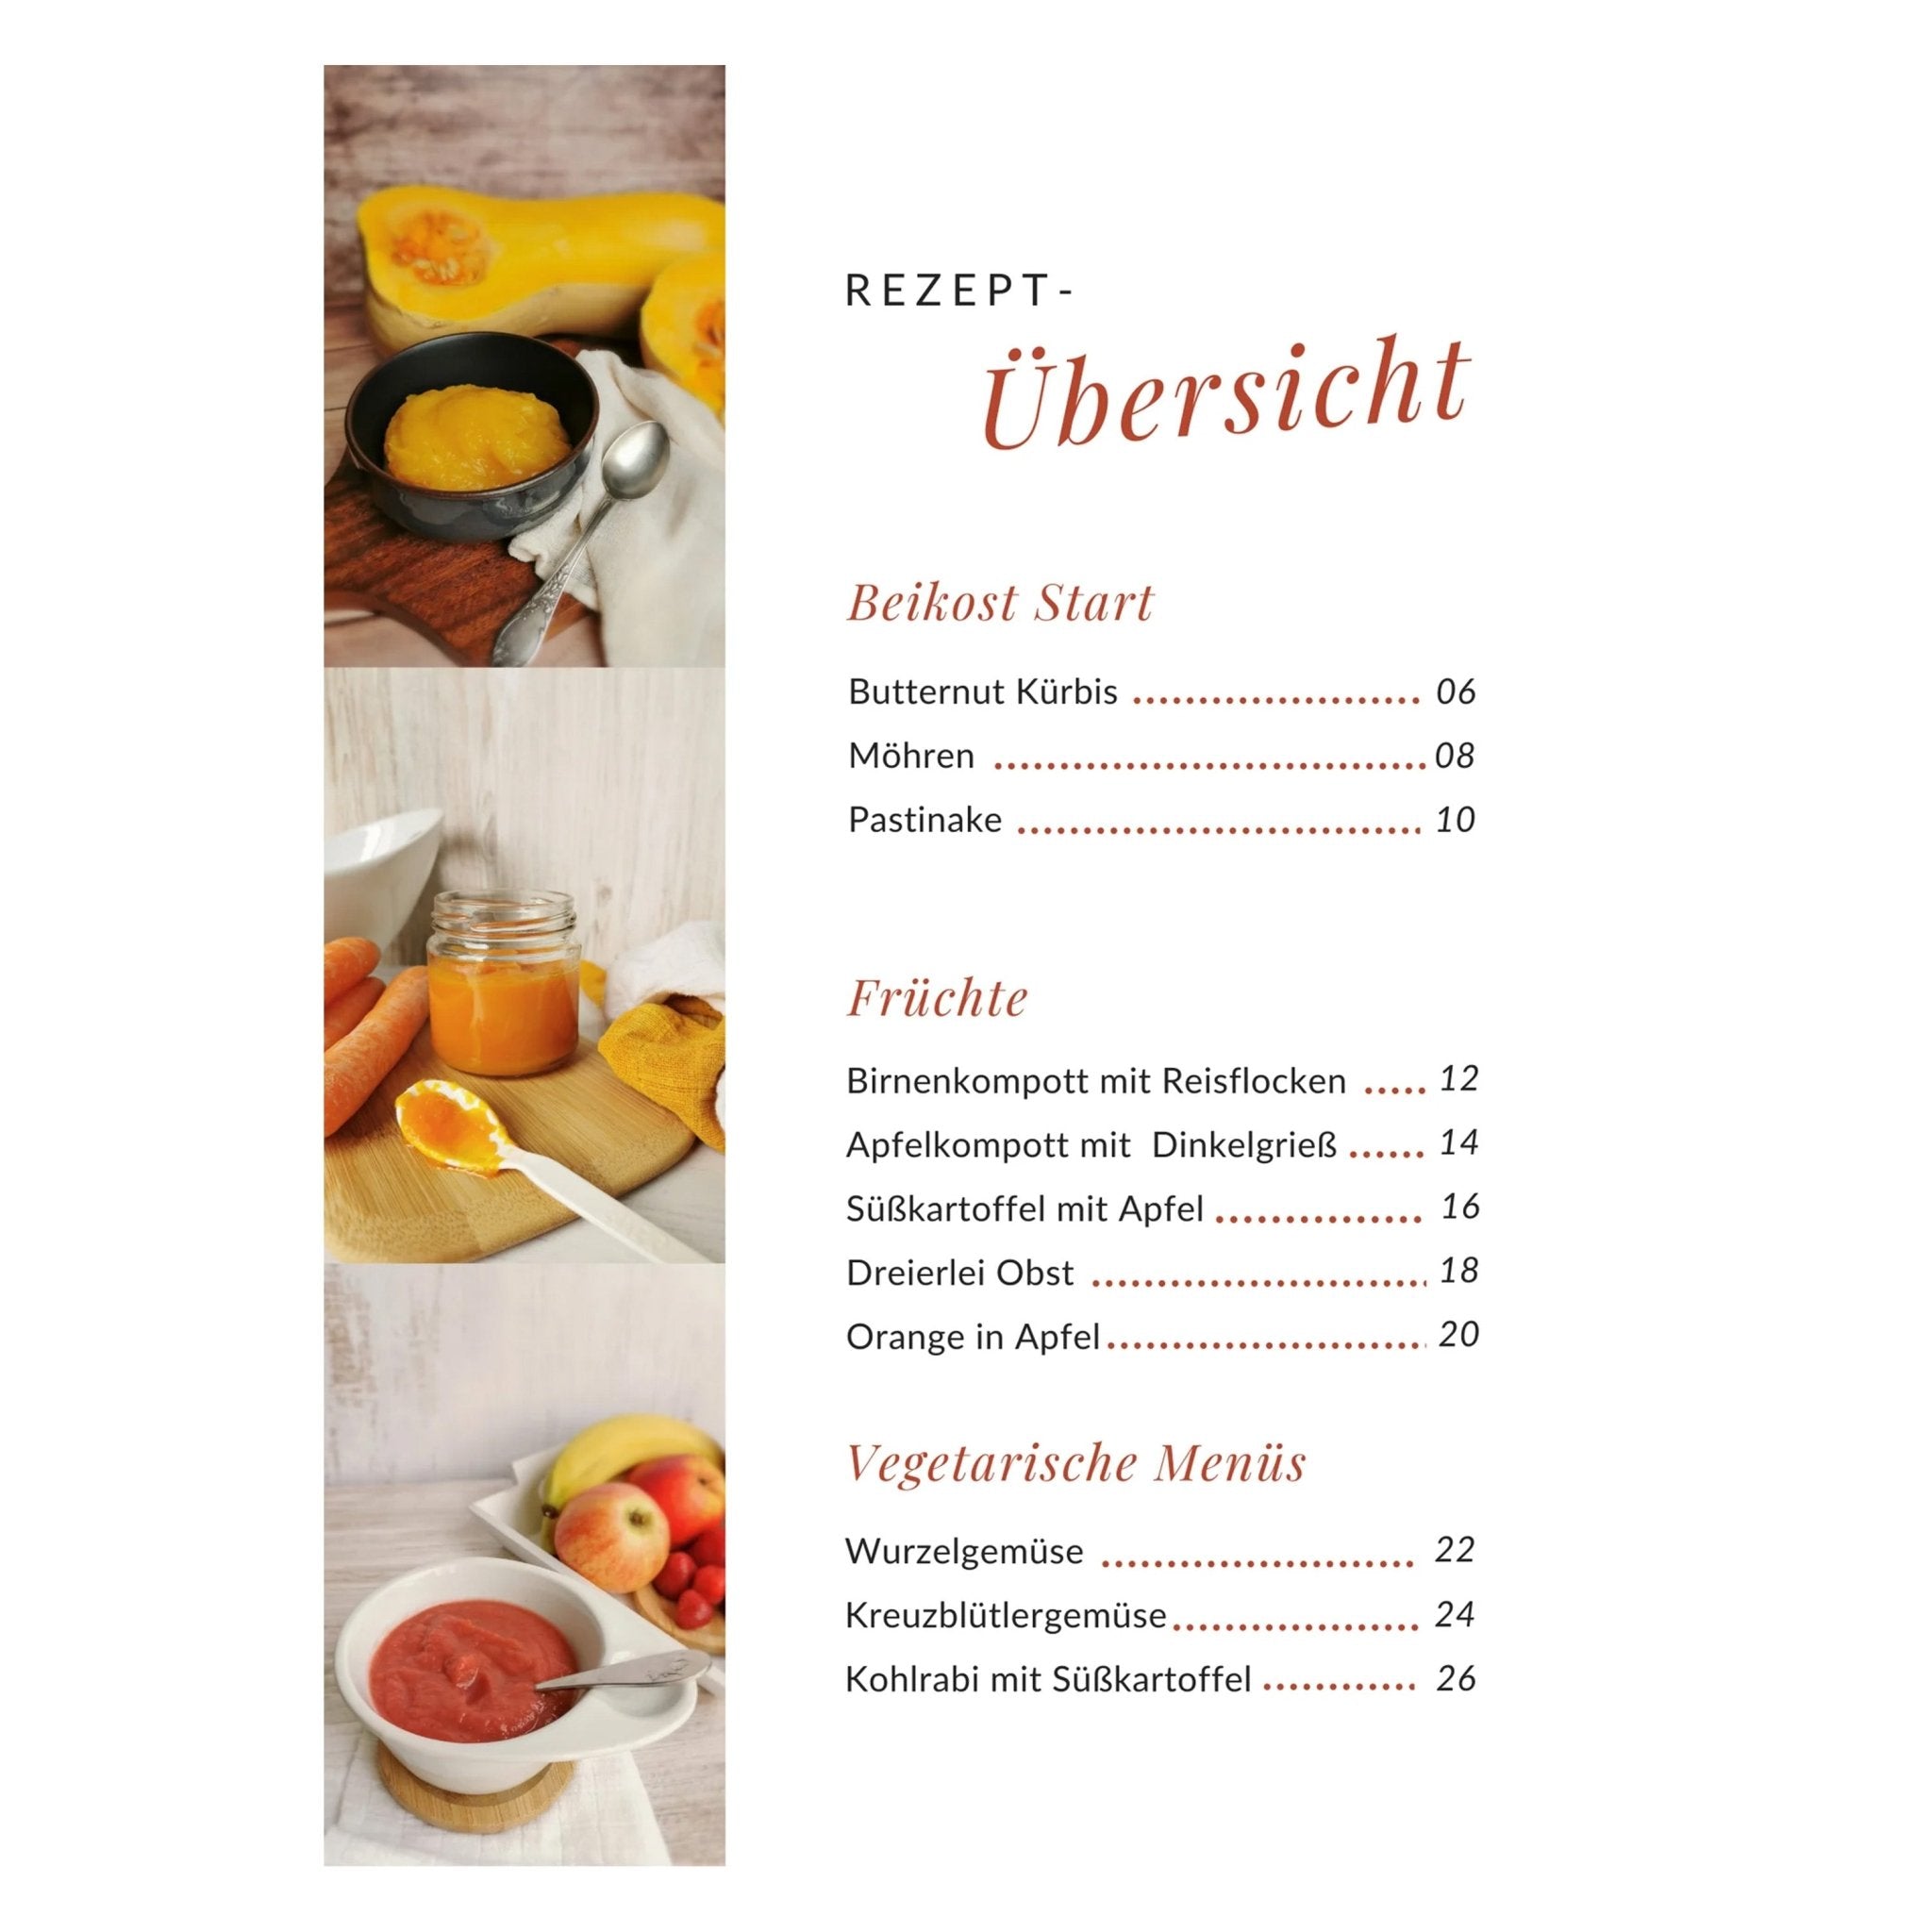 Baby Beikost | 20 Rezepte für den Monsieur Cuisine oder Thermomix | Julia Pfaffenrot - Wundermix GmbH